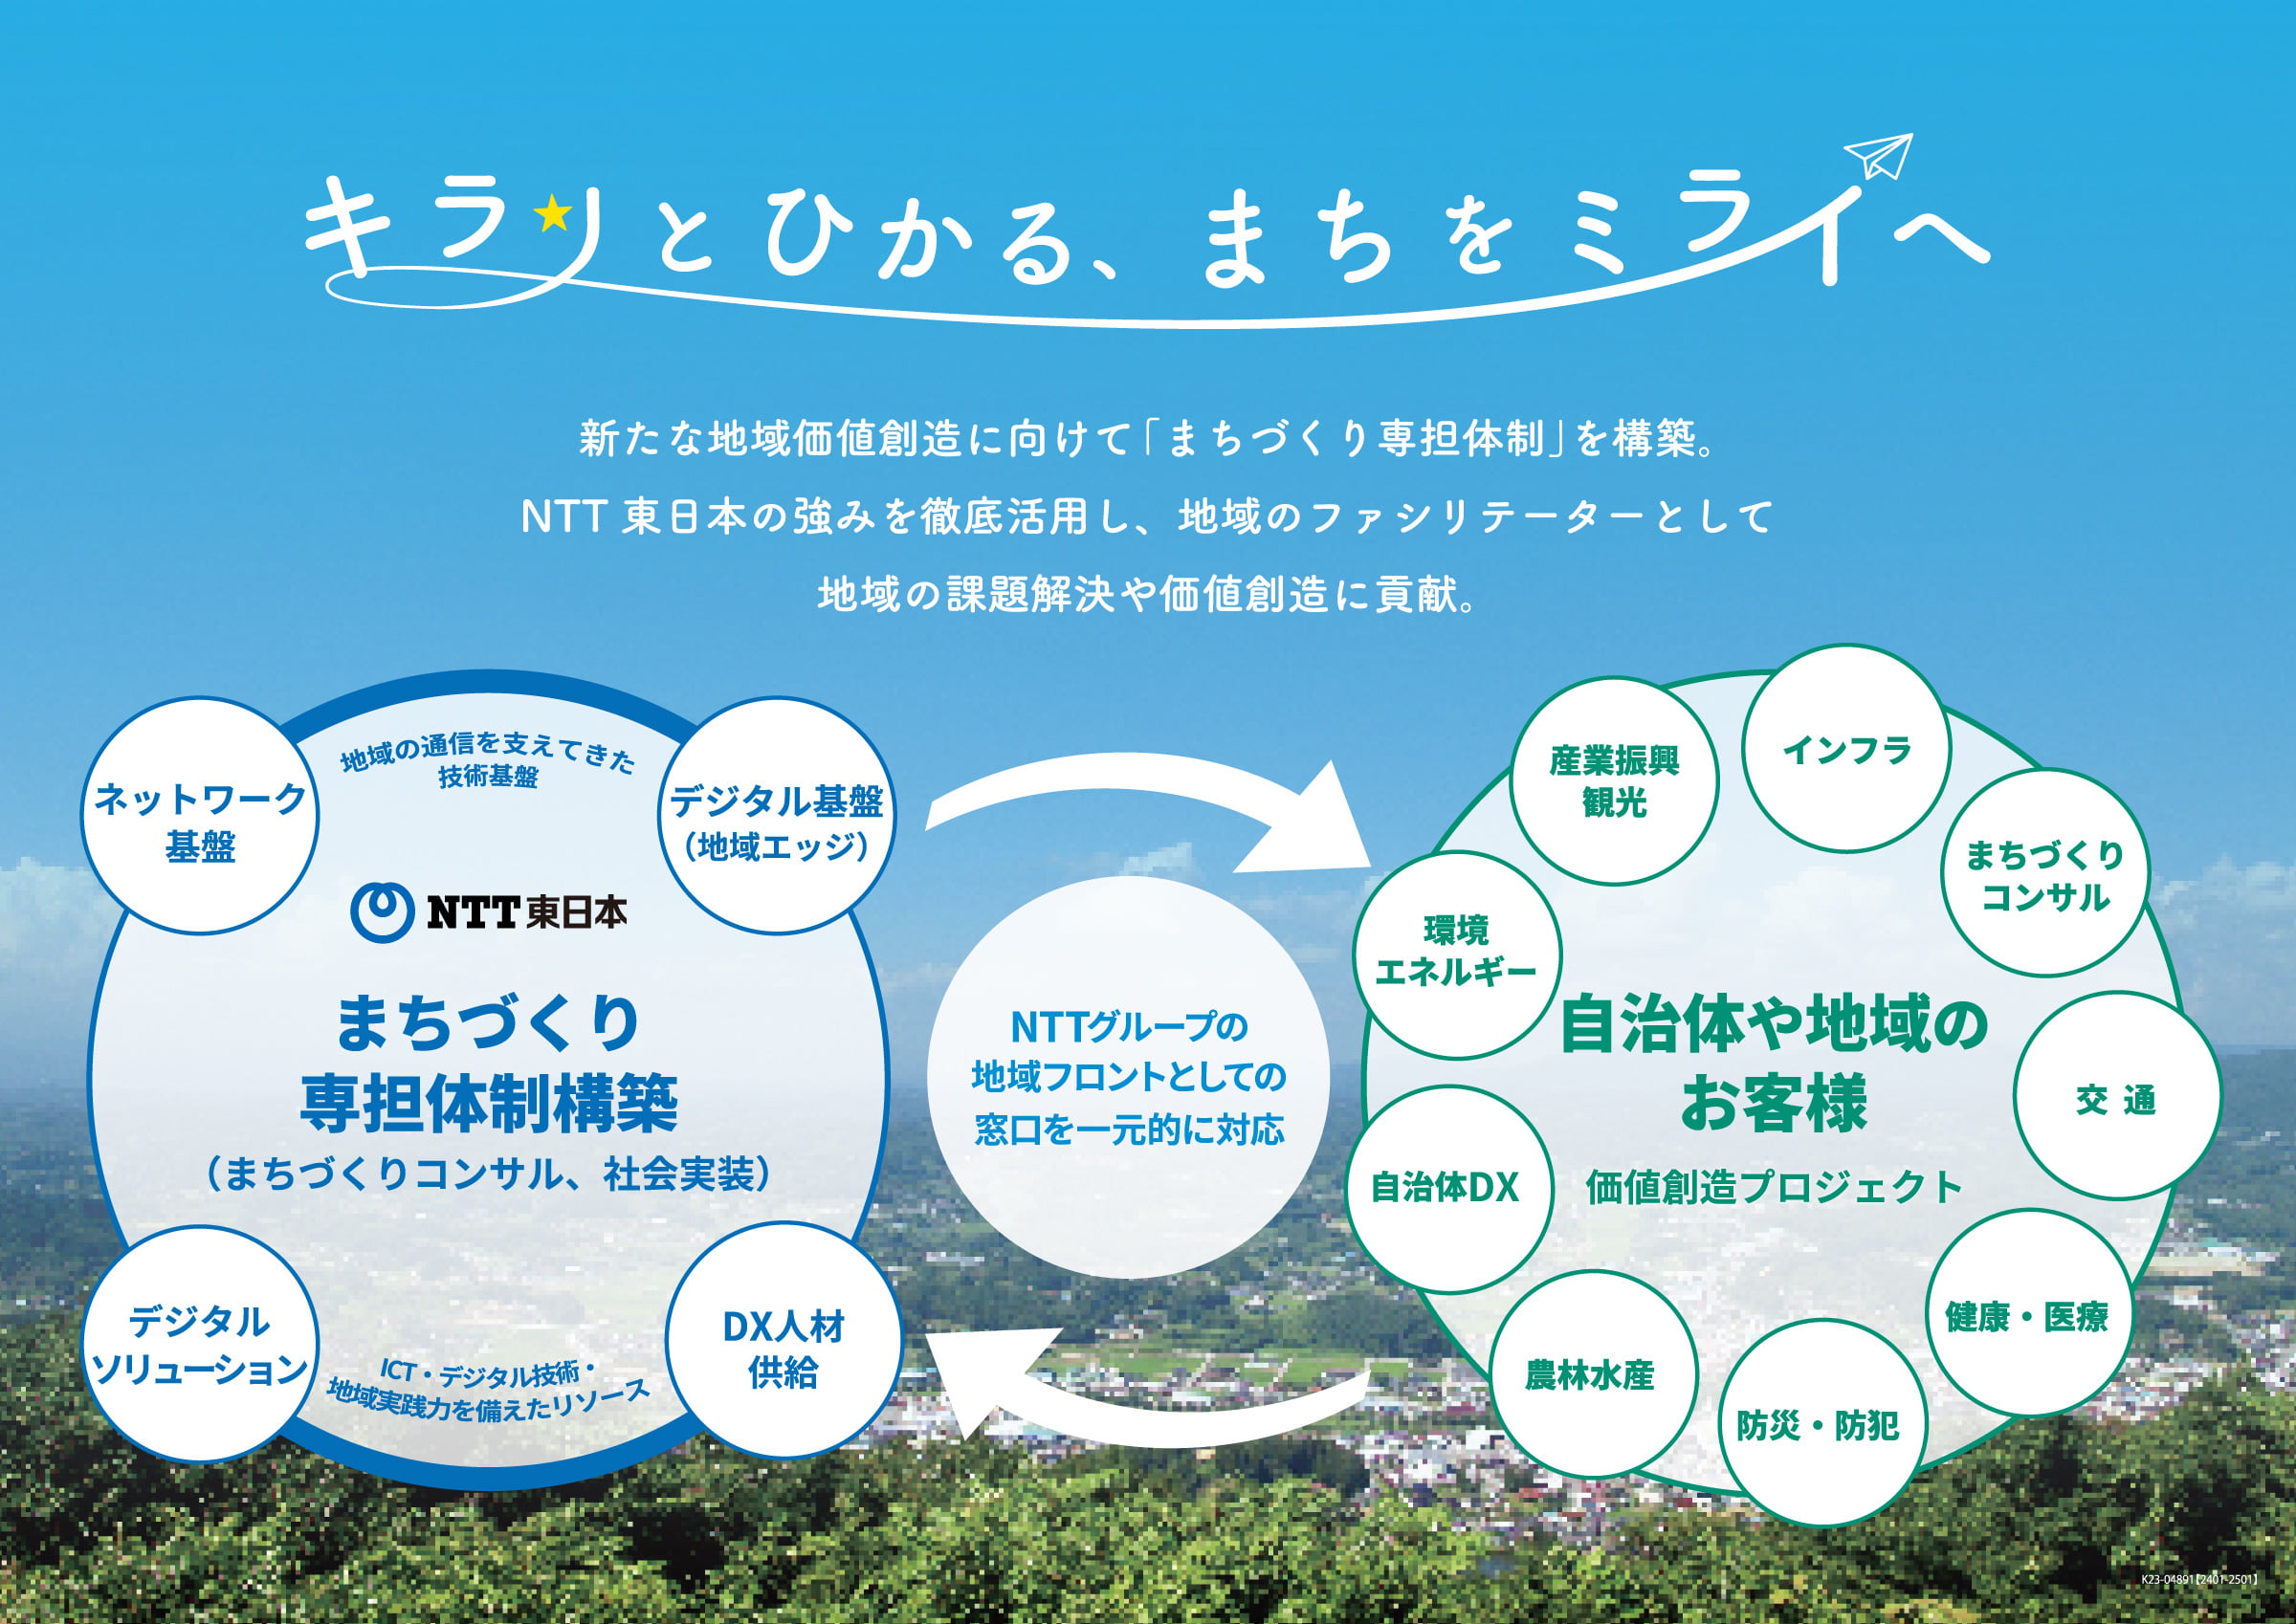 キラリとひかる、まちをミライへ 新たな地域価値創造に向けて「まちづくり専担体制」を構築。NTT東日本の強みを徹底活用し、地域のファシリテーターとして地域の課題解決や価値創造に貢献。